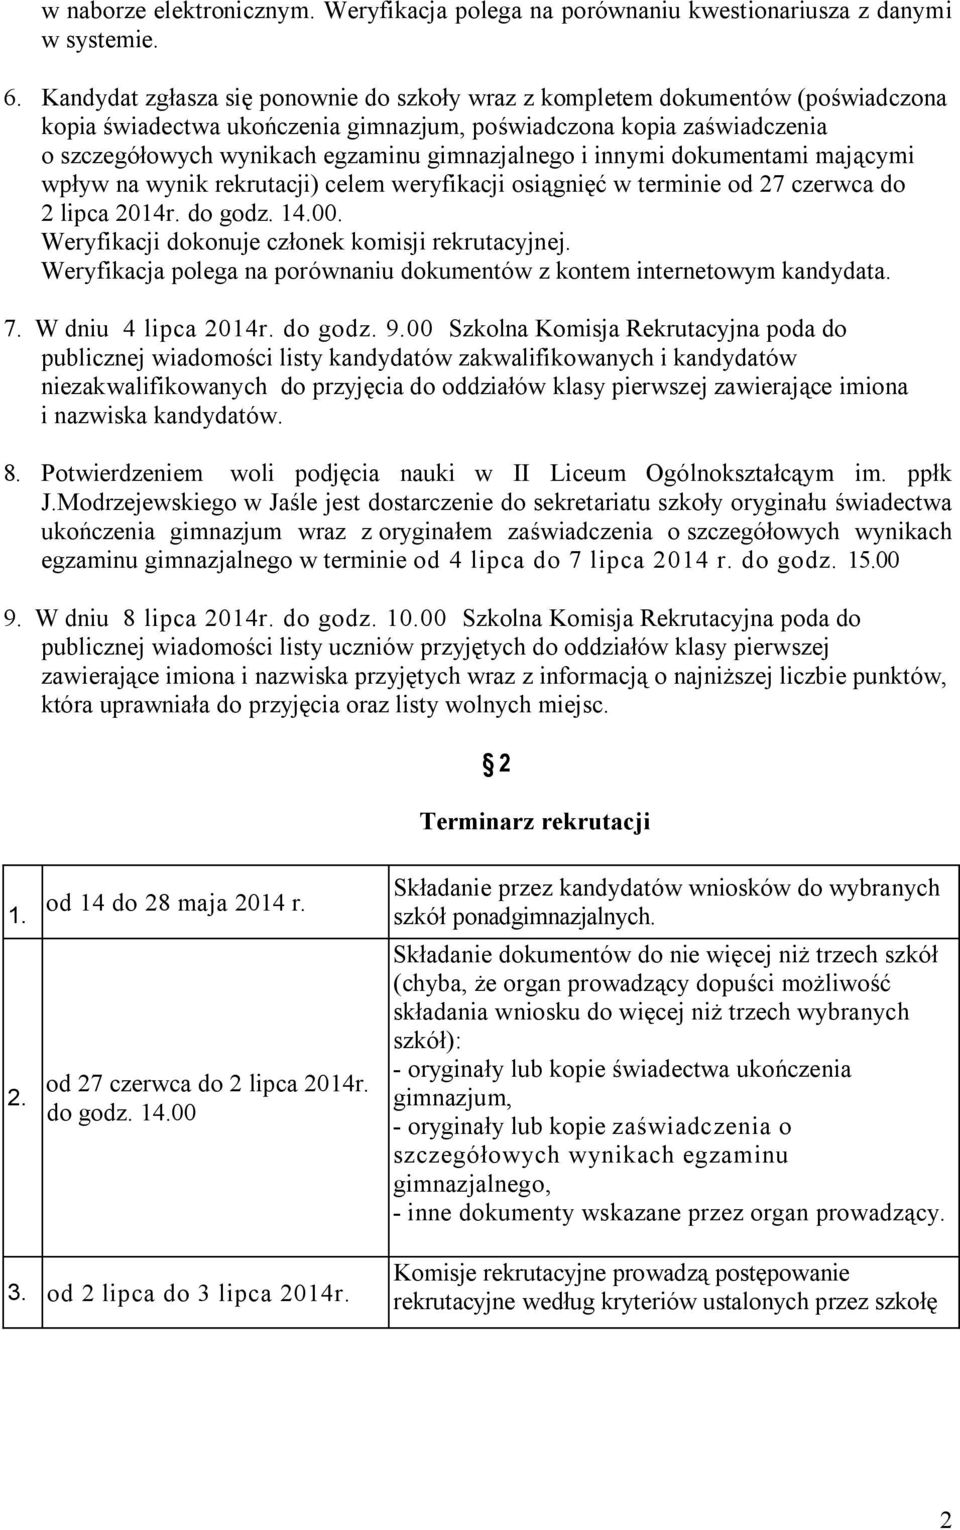 gimnazjalnego i innymi dokumentami mającymi wpływ na wynik rekrutacji) celem weryfikacji osiągnięć w terminie od 27 czerwca do 2 lipca 2014r. do godz. 14.00.